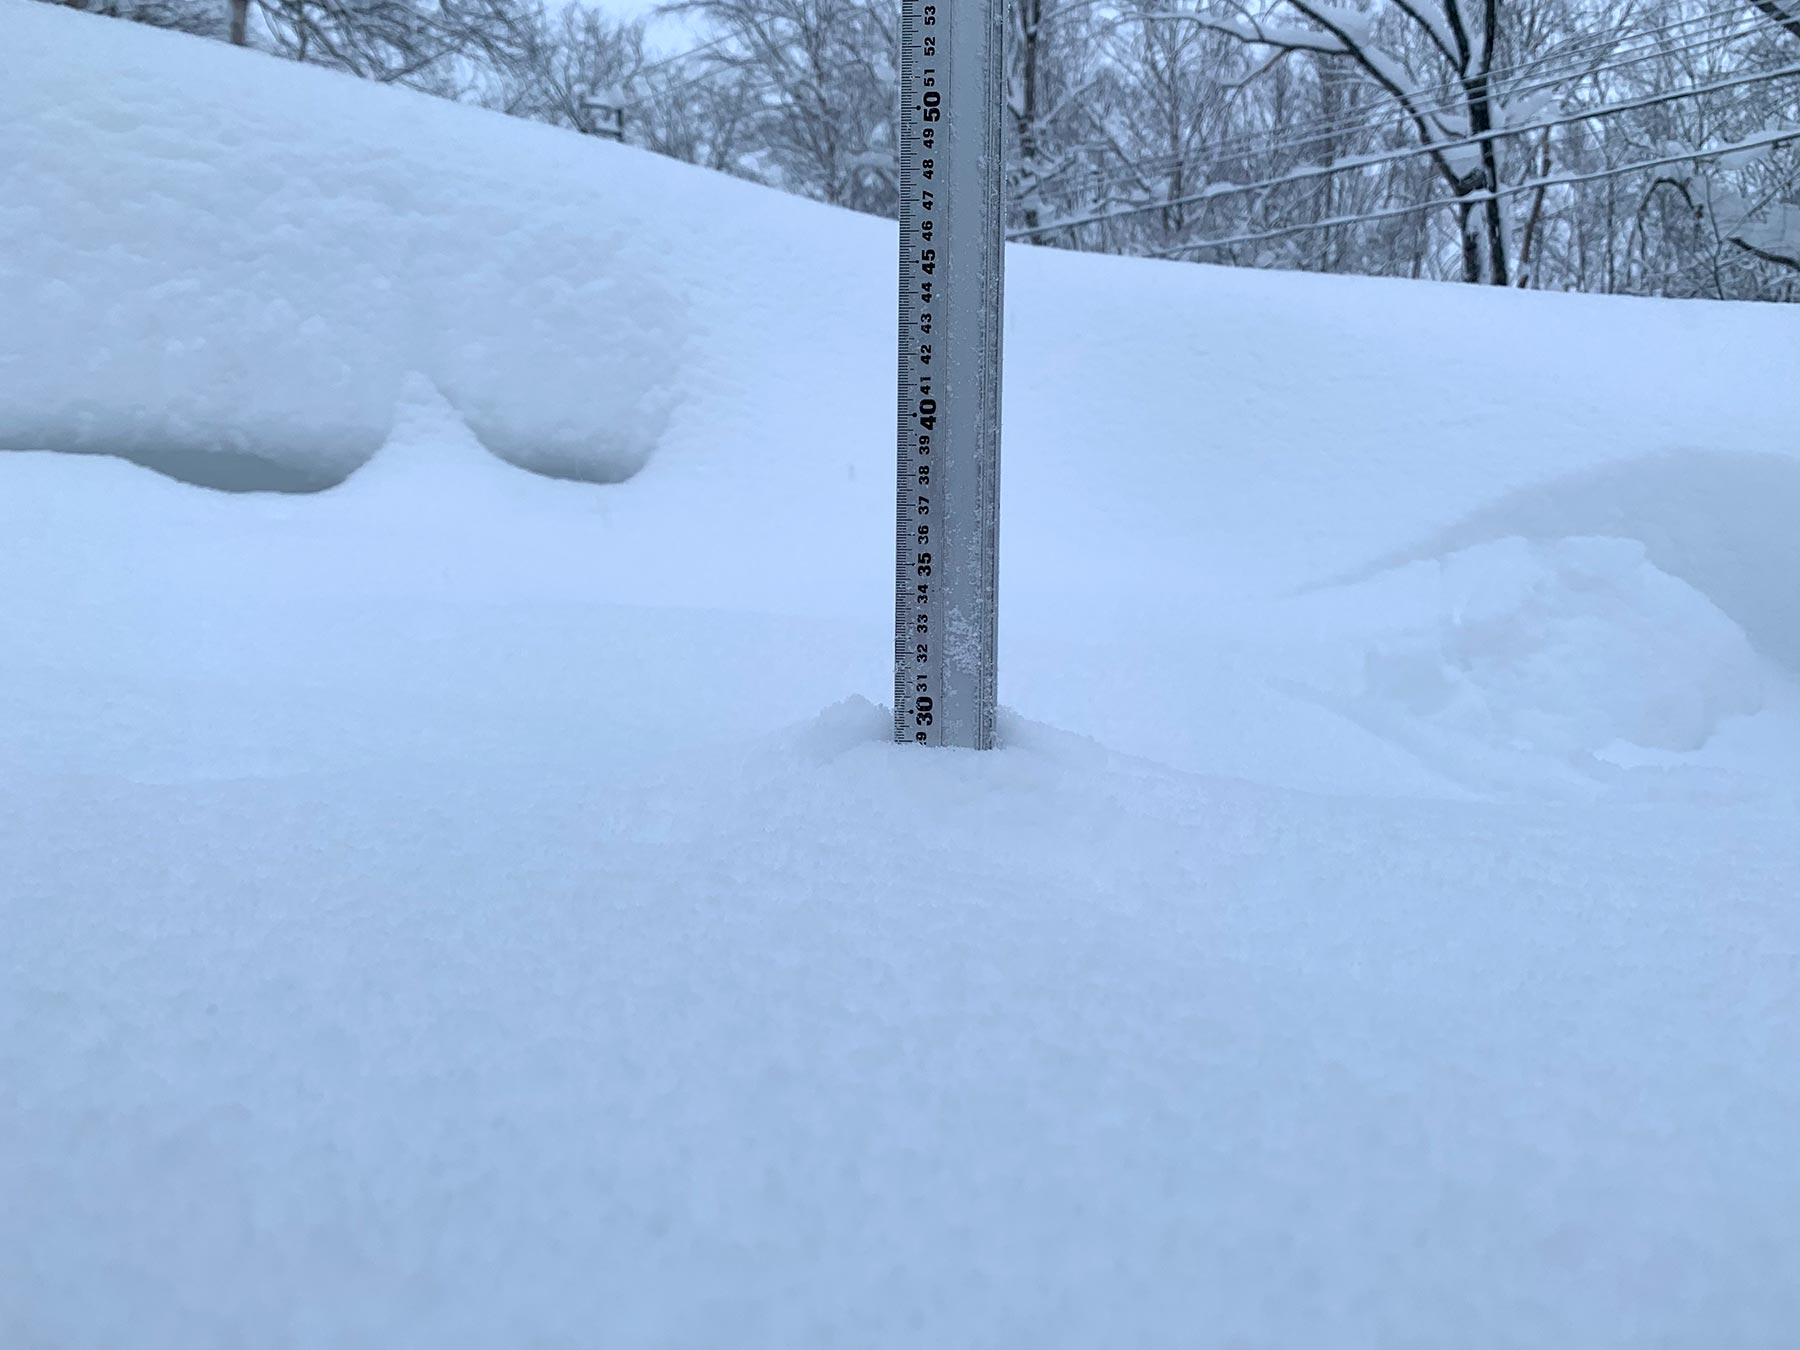 Niseko Snow Report, 31 December 2020